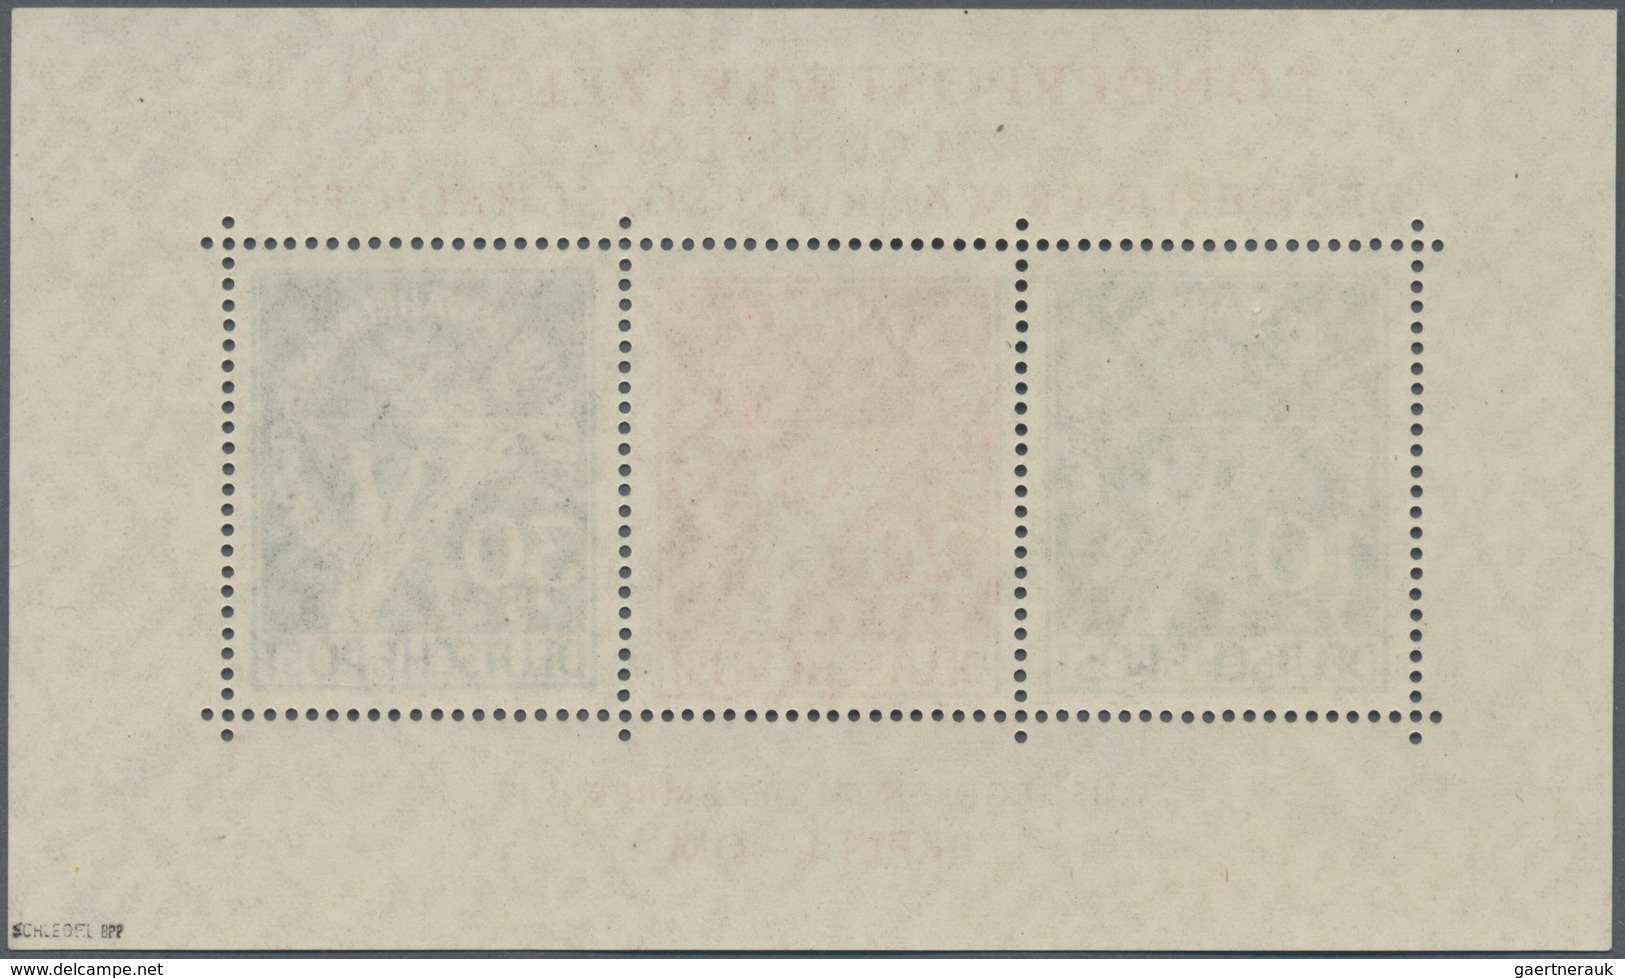 Berlin: 1949, Währungsgeschädigten-Block, Postfrisch Mit Plattenfehlern Beim 10 Pf.-Wert 'Bruch Im C - Covers & Documents